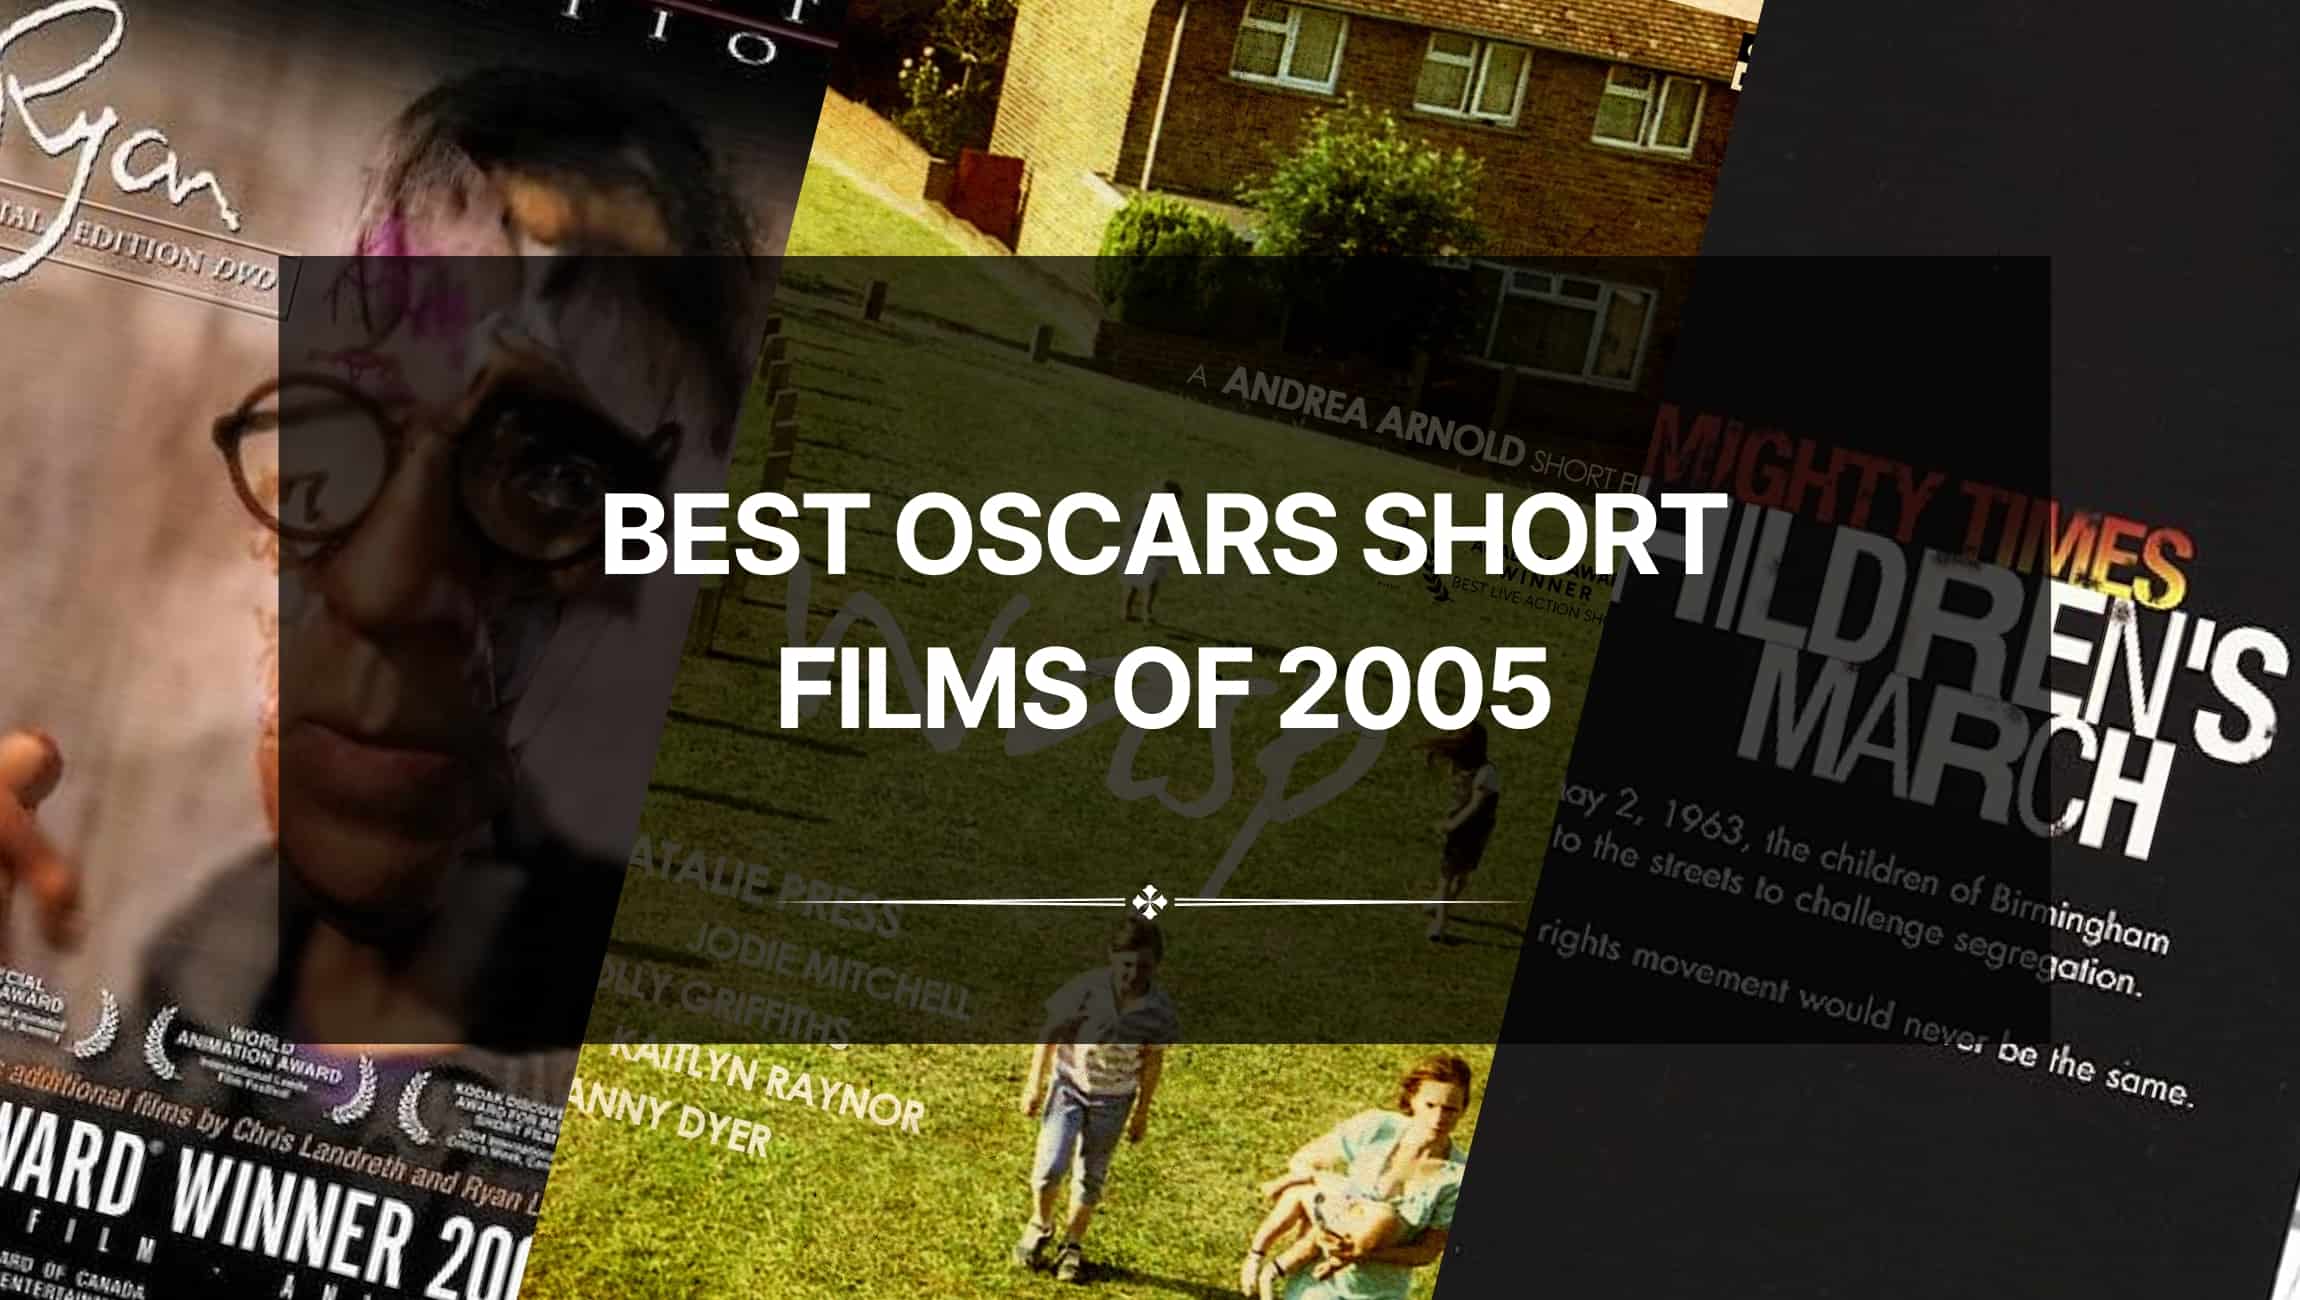 The Best Oscars Short Films of 2005 – Stunning Storytelling